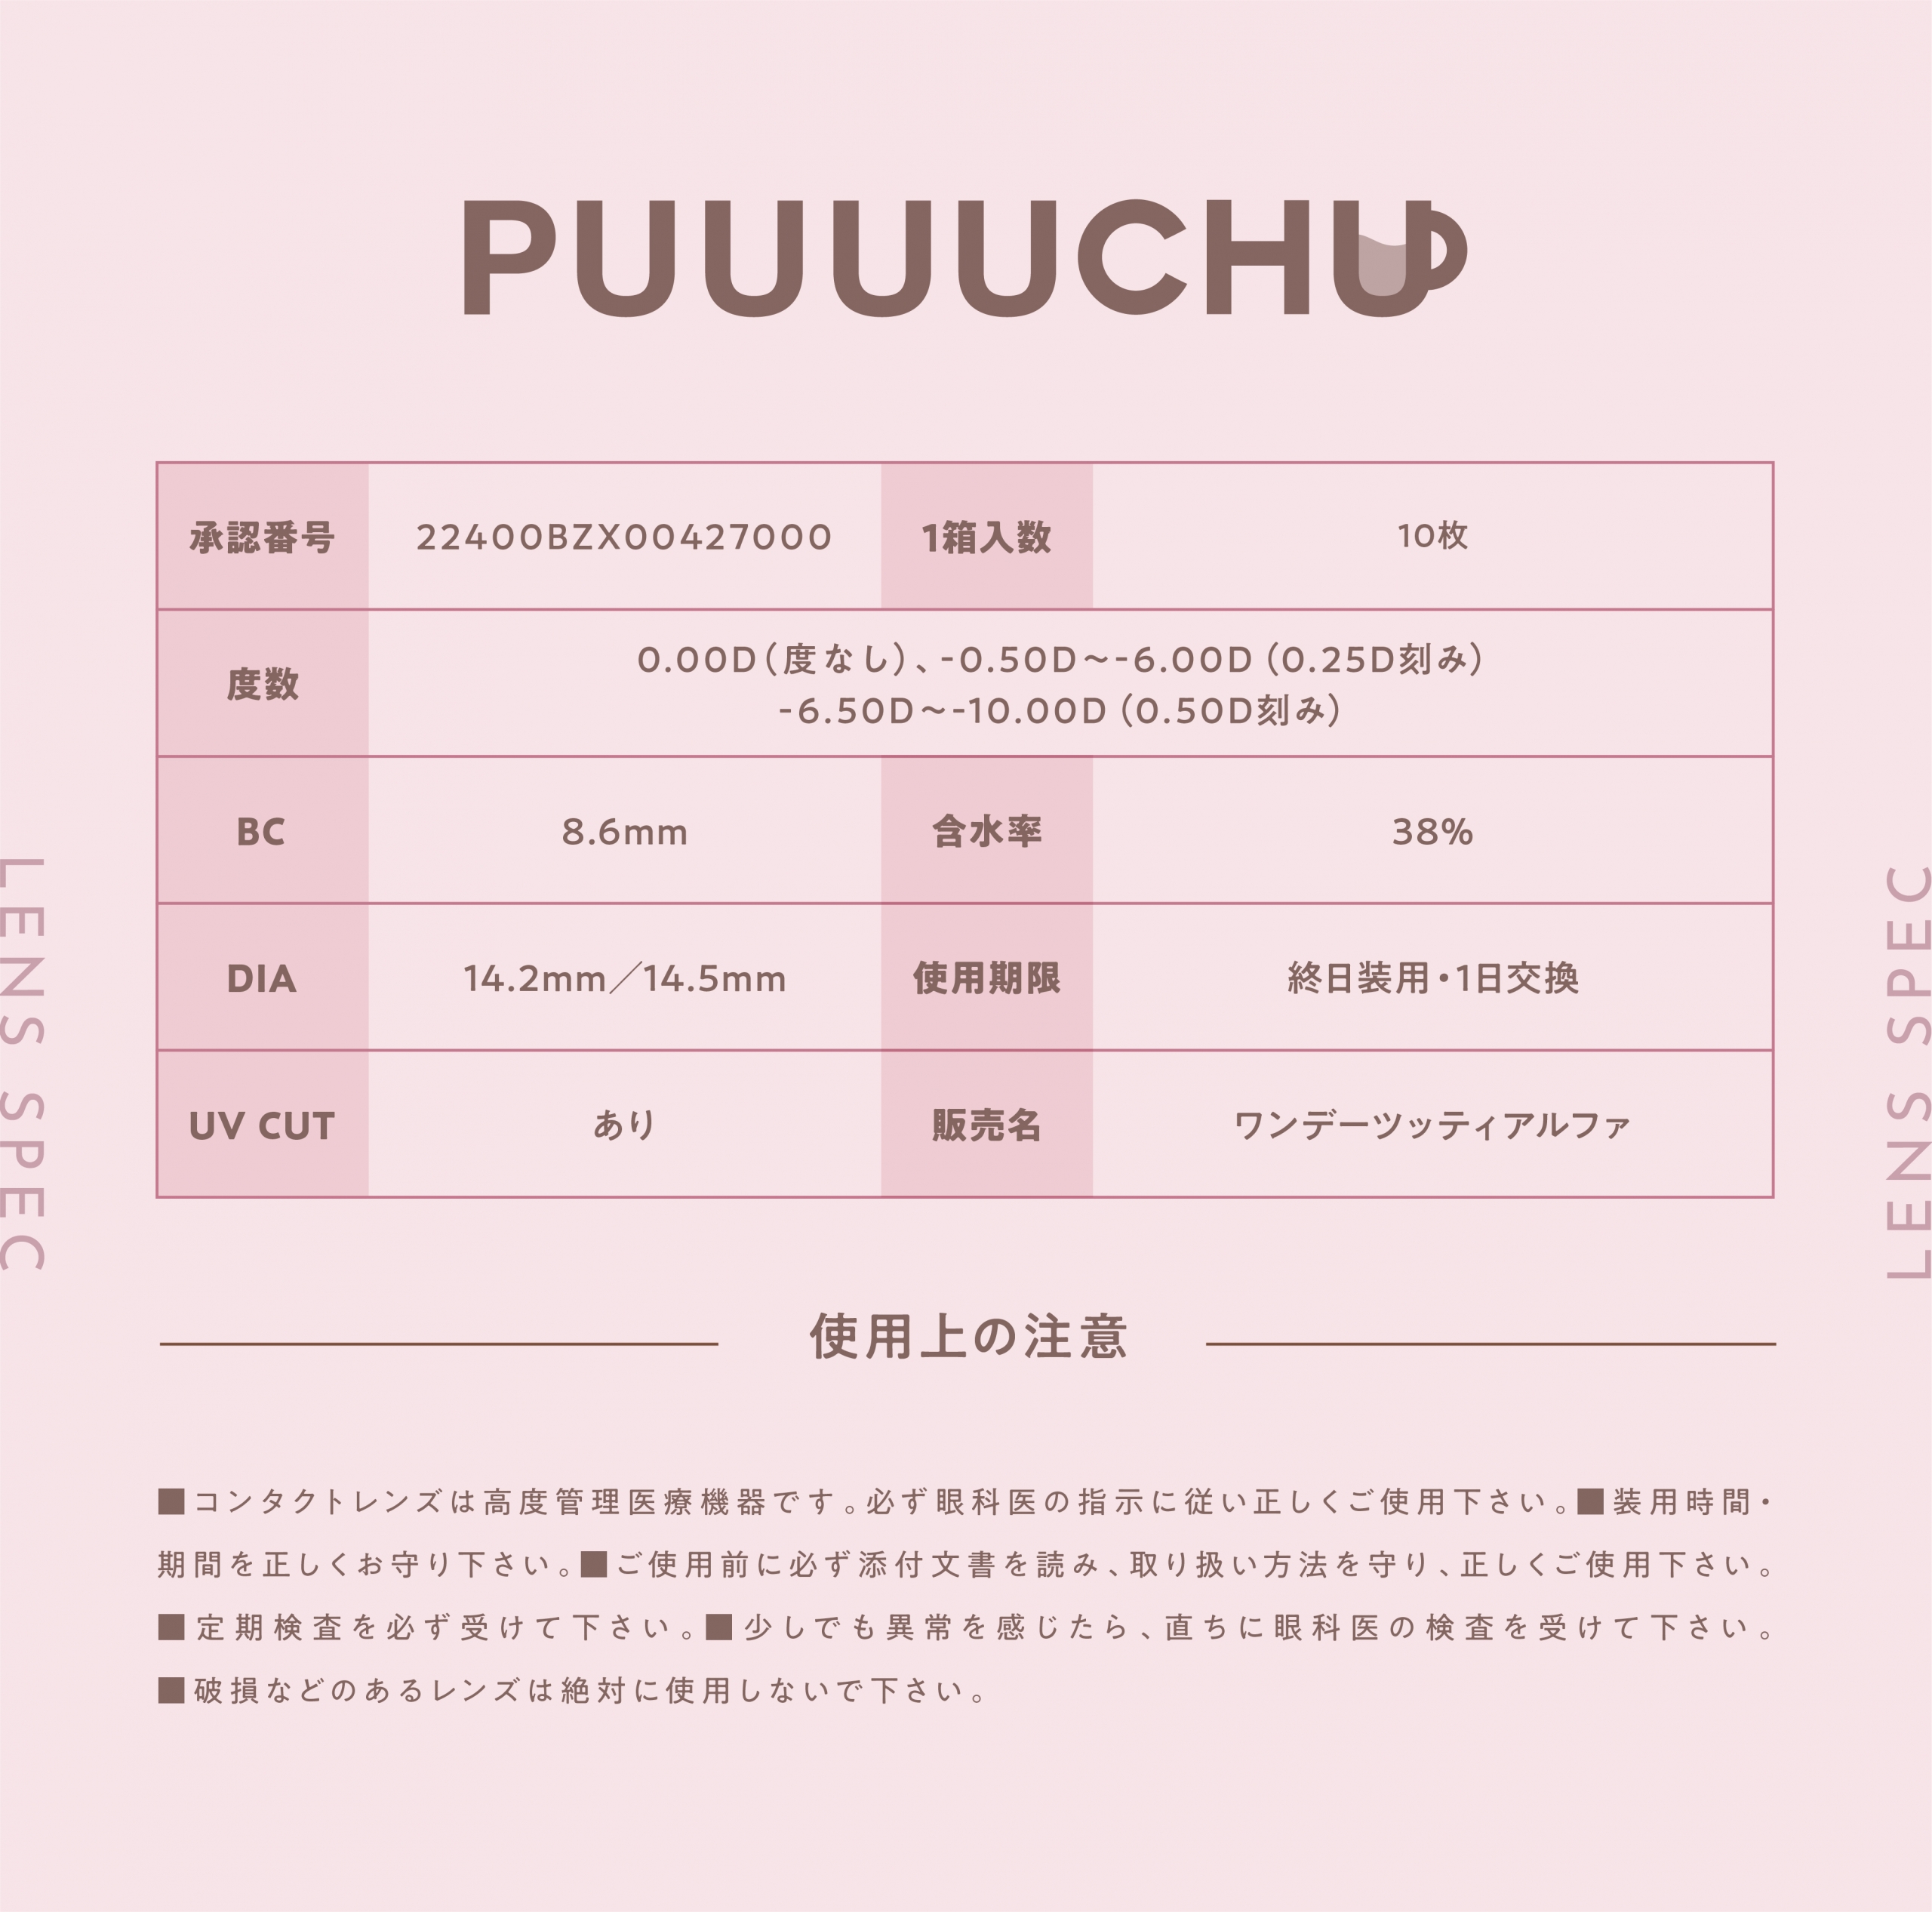  PUUUUCHU(プーチュ)【度あり/度なし • ワンデー • DIA14.2/14.5】